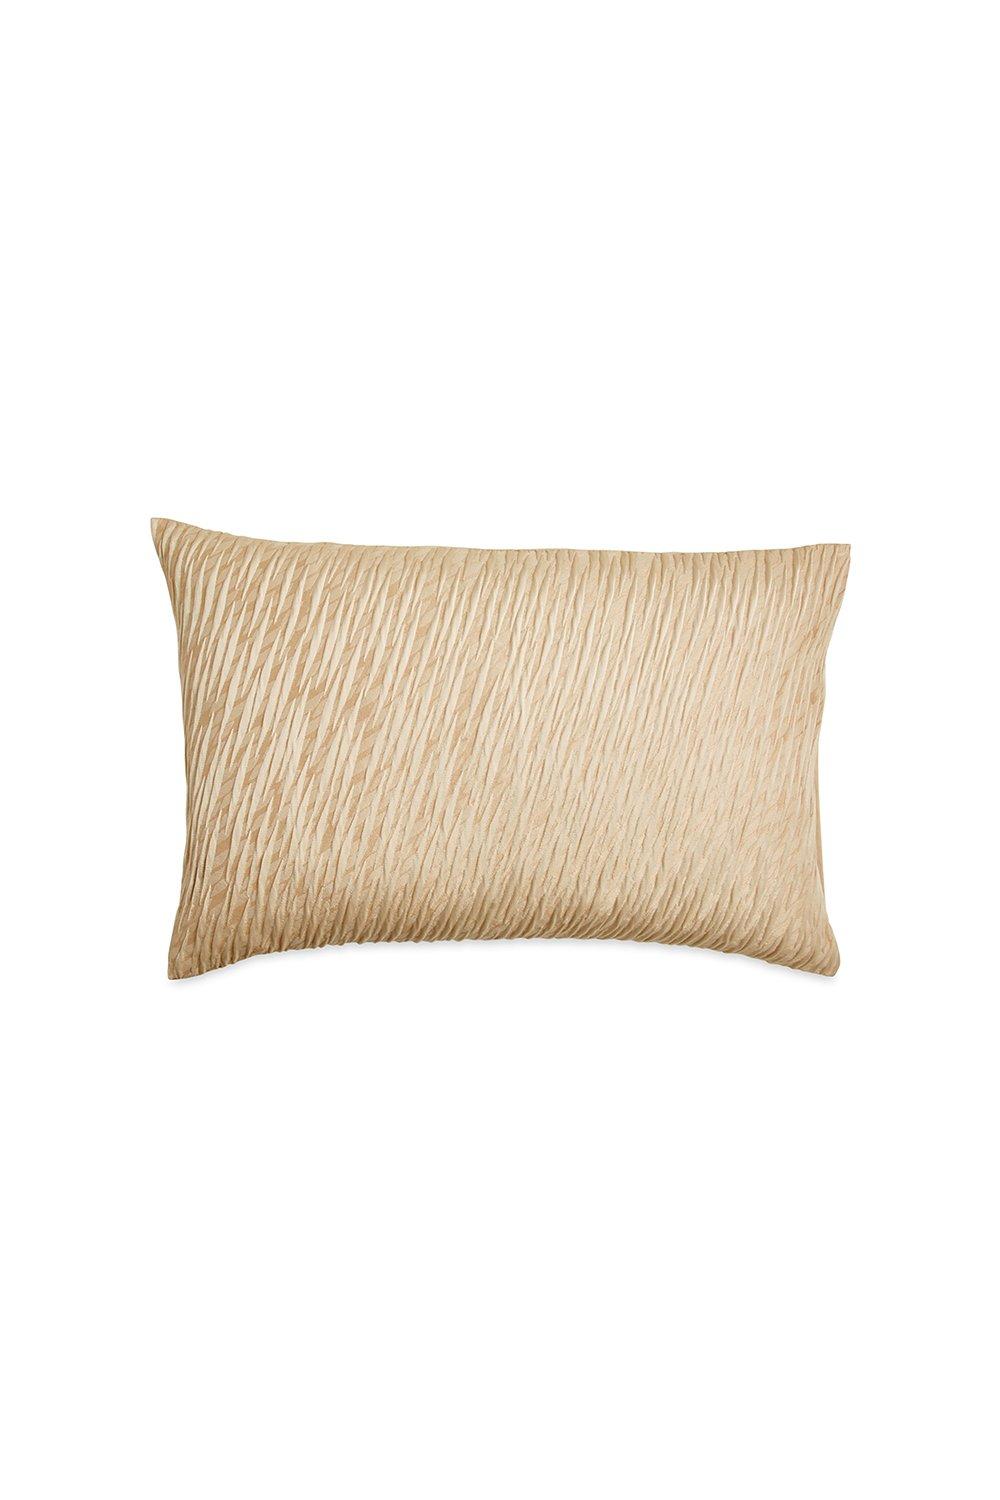 'Gold Dust' Standard Pillowcase